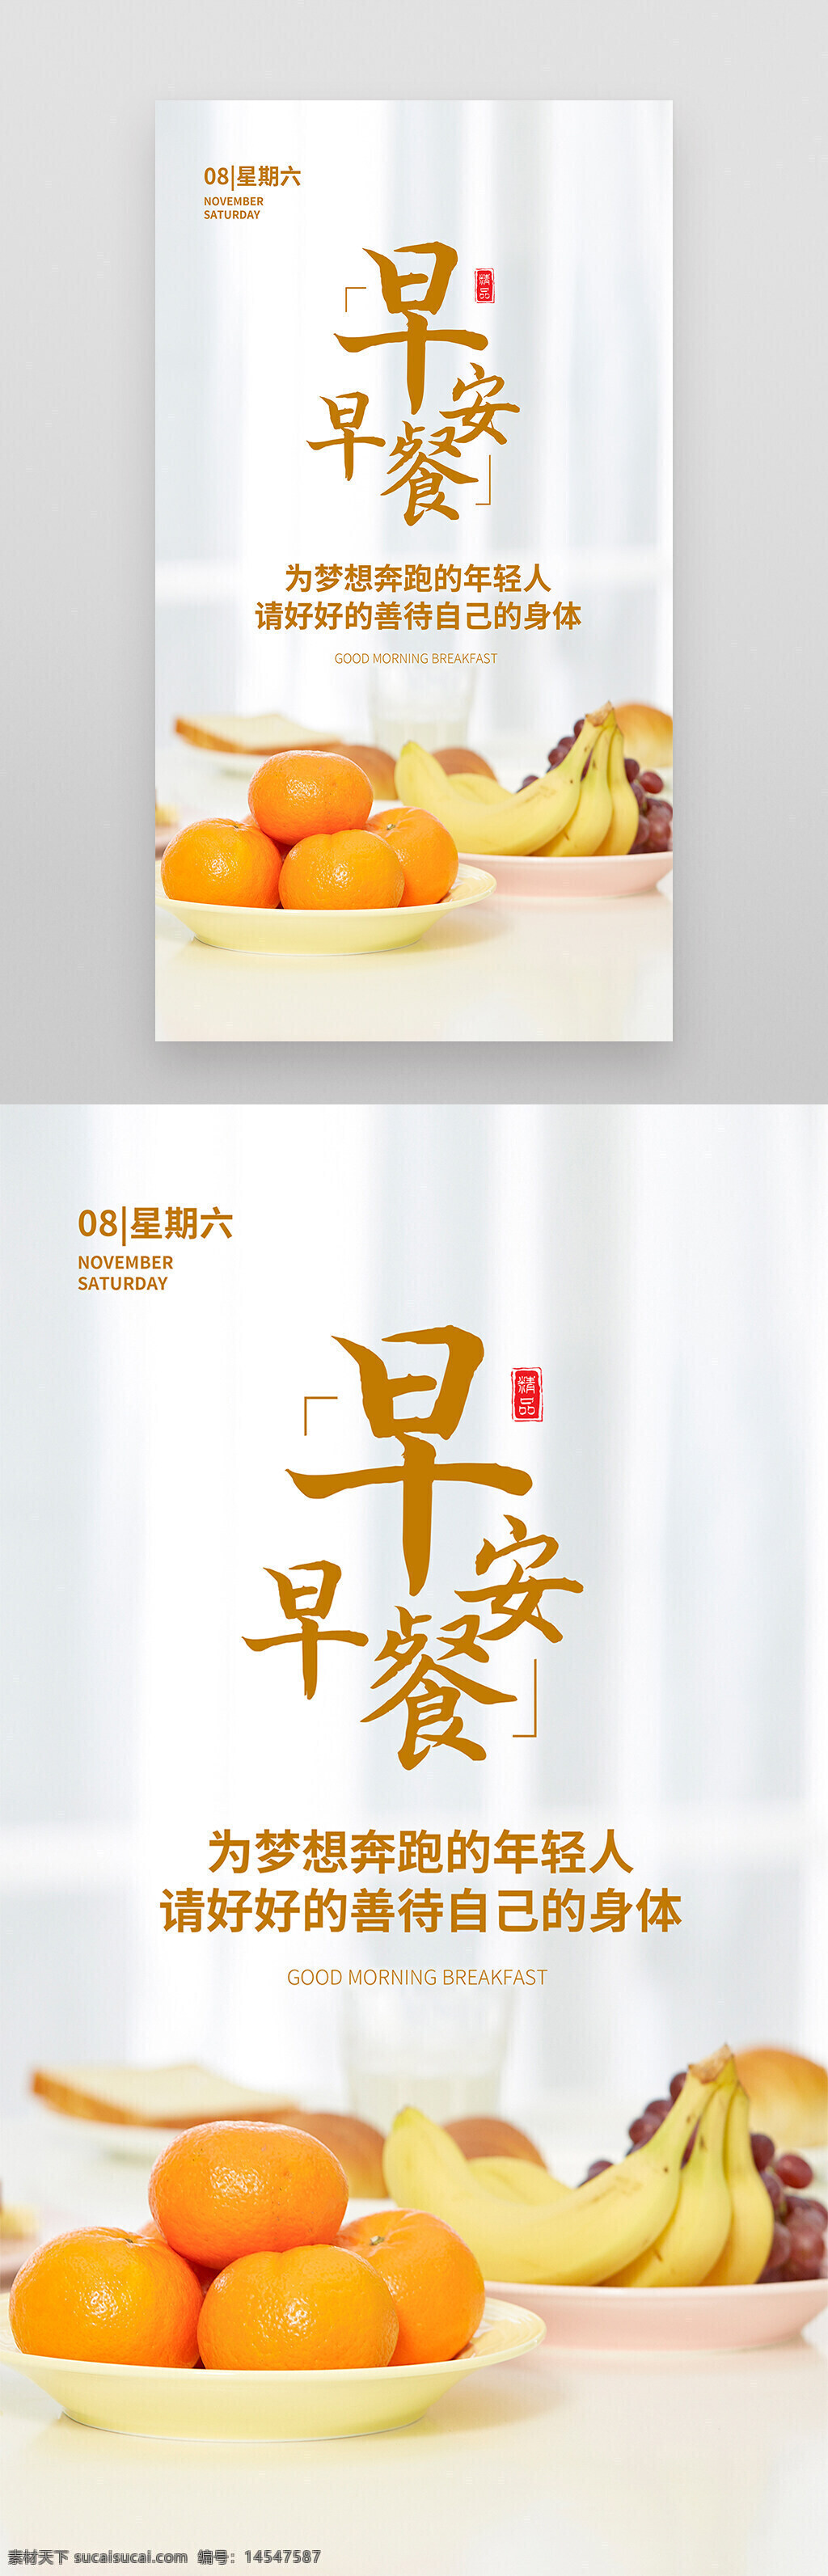 早安 早餐 橘子 水果 营养餐 摄影图 海报